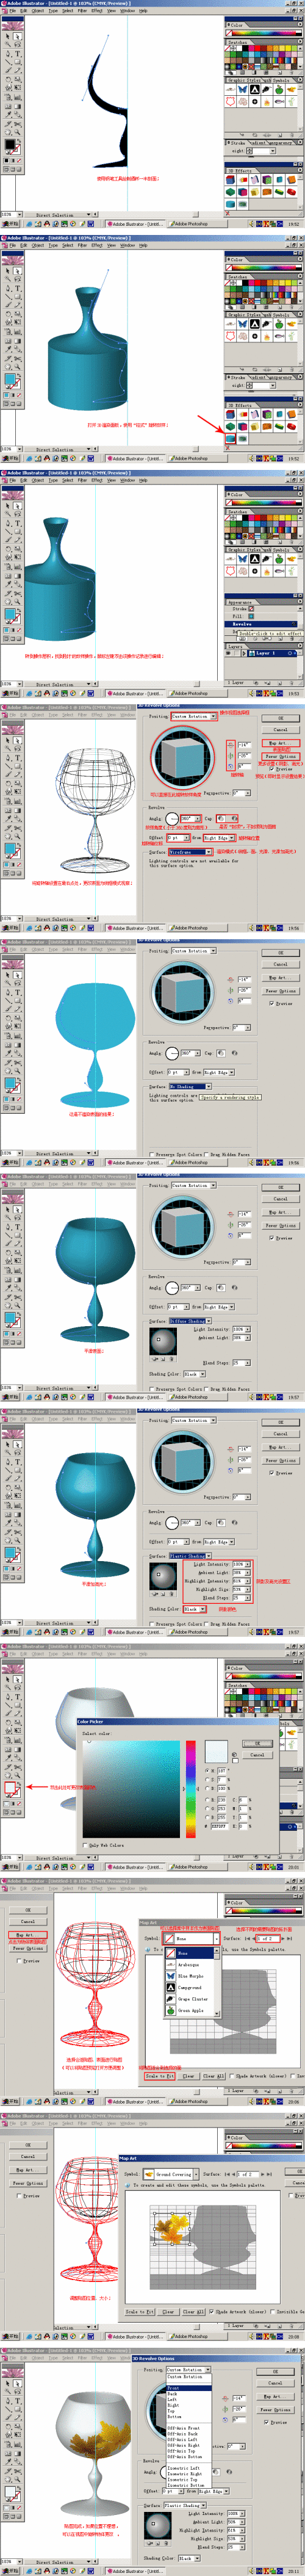 巧用Illustrator CS的3D功能制作酒杯